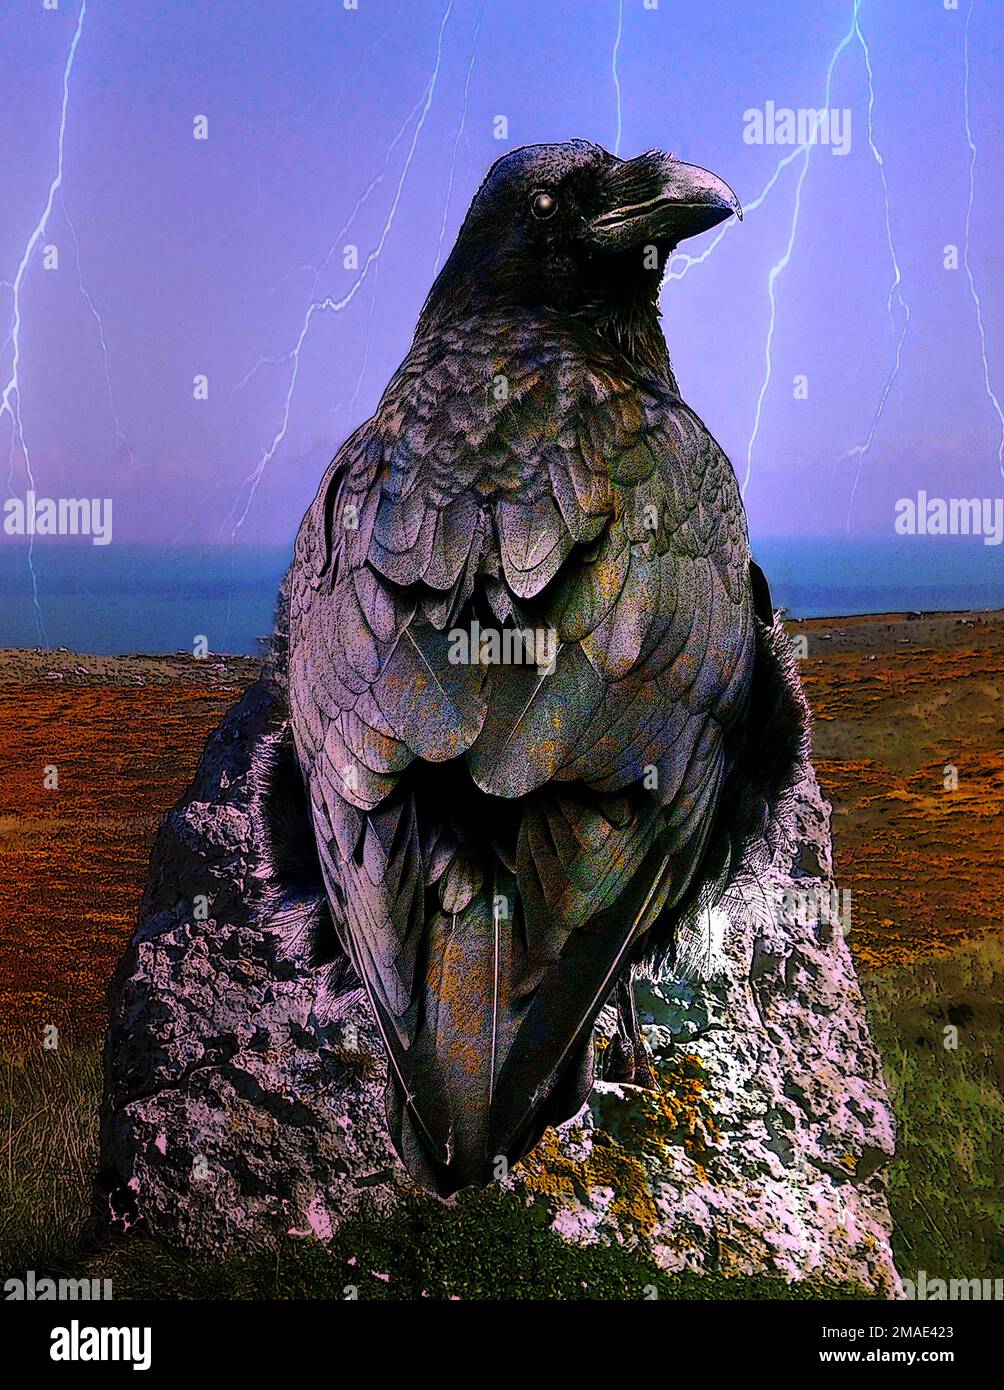 L'art fantastique d'un grand corbeau / oiseau noir assis sur une pierre debout, éclairant en arrière-plan, faisant référence au mythe celtique Morrigan, Norse Huginn & Munin Banque D'Images